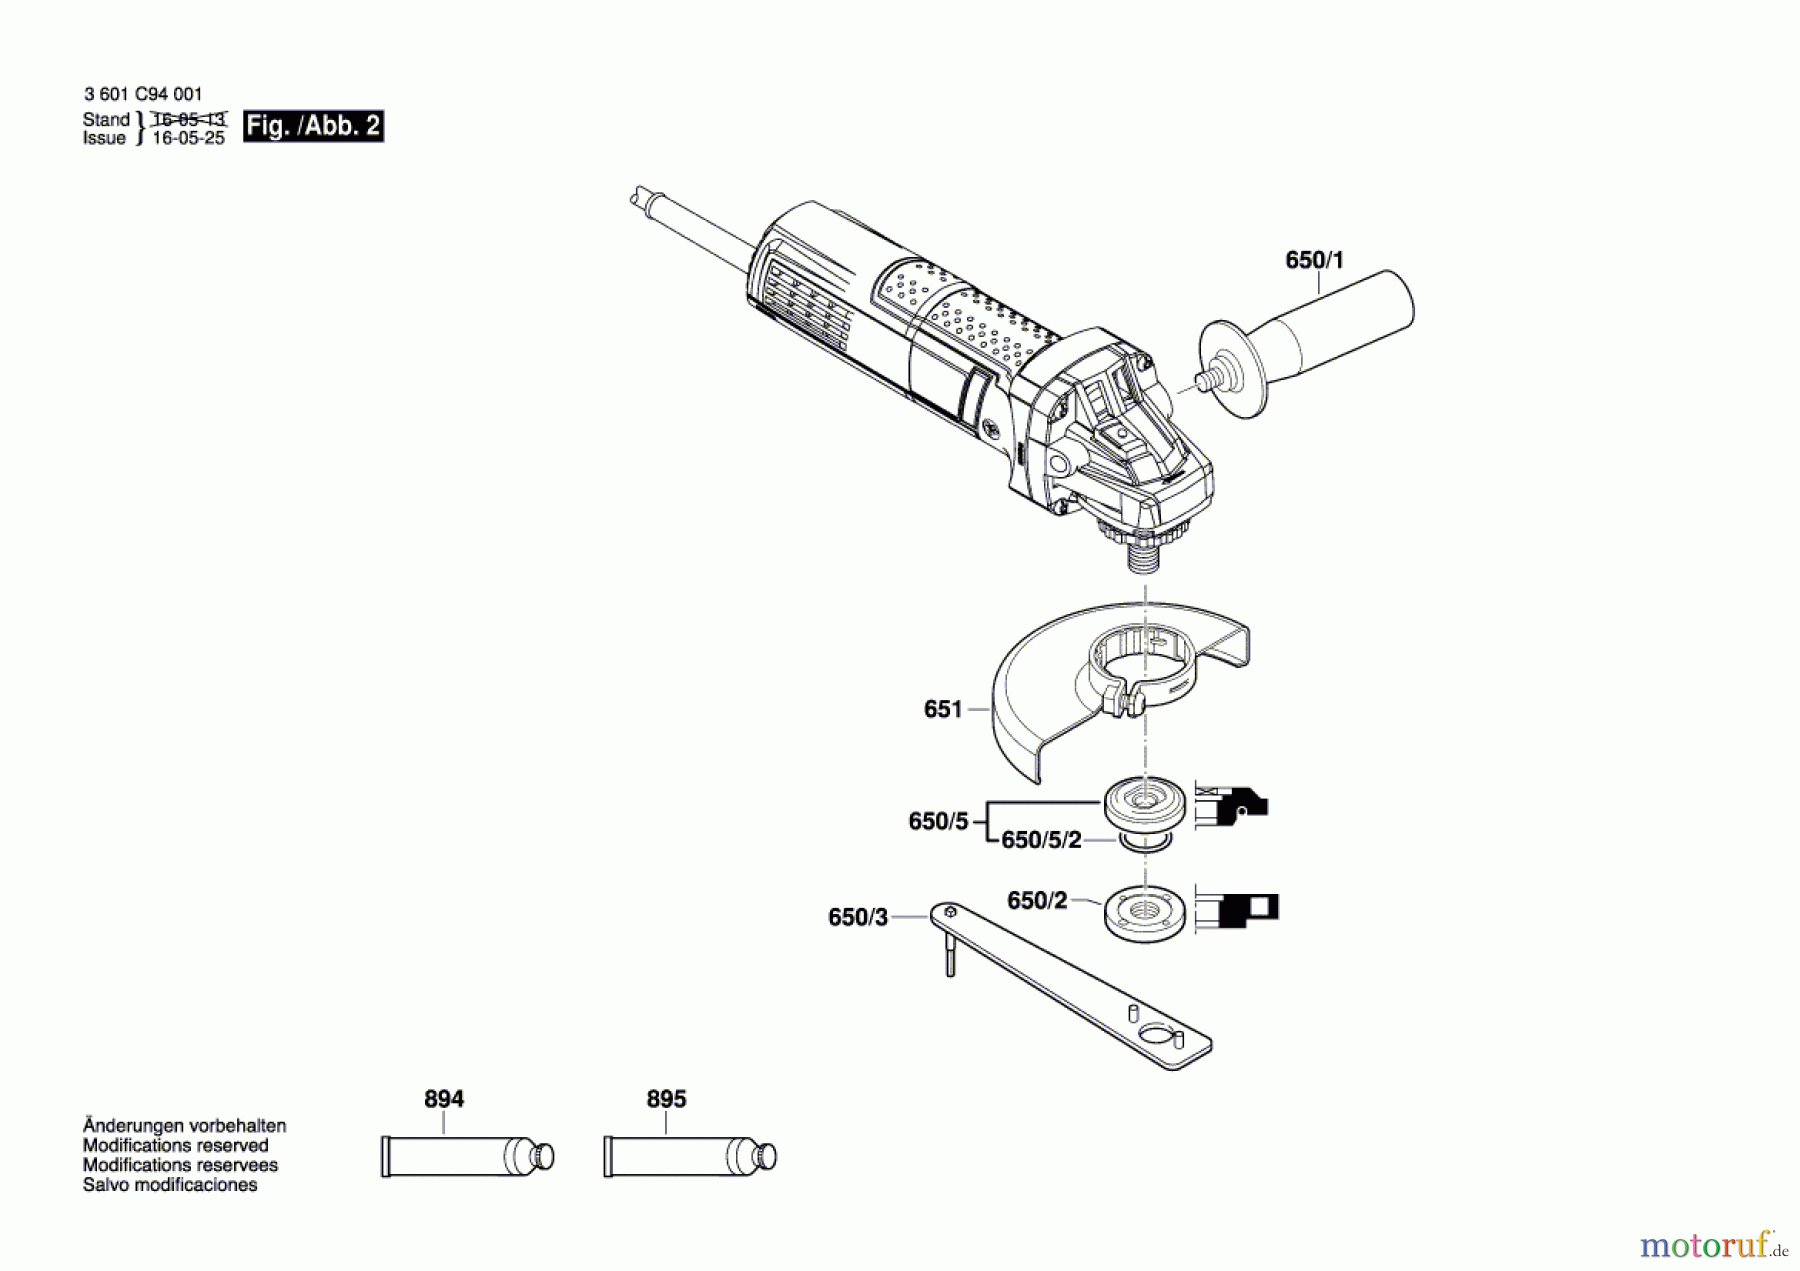  Bosch Werkzeug Winkelschleifer GWS 750 Seite 2